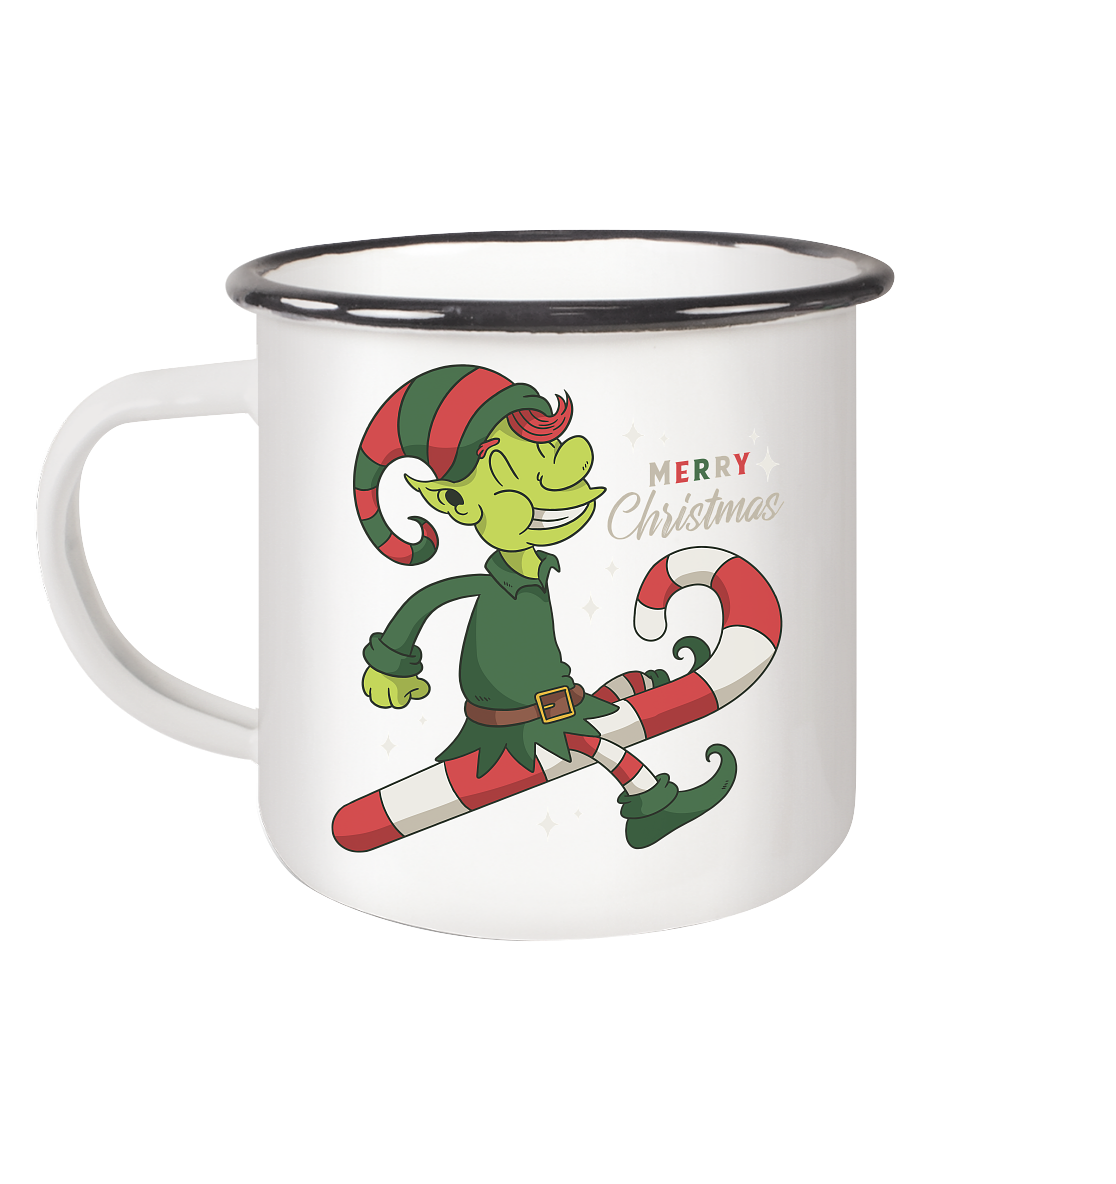 Christmas Design Cute Christmas Elf with Candy Cane Merry Christmas - Enamel Mug (Black)